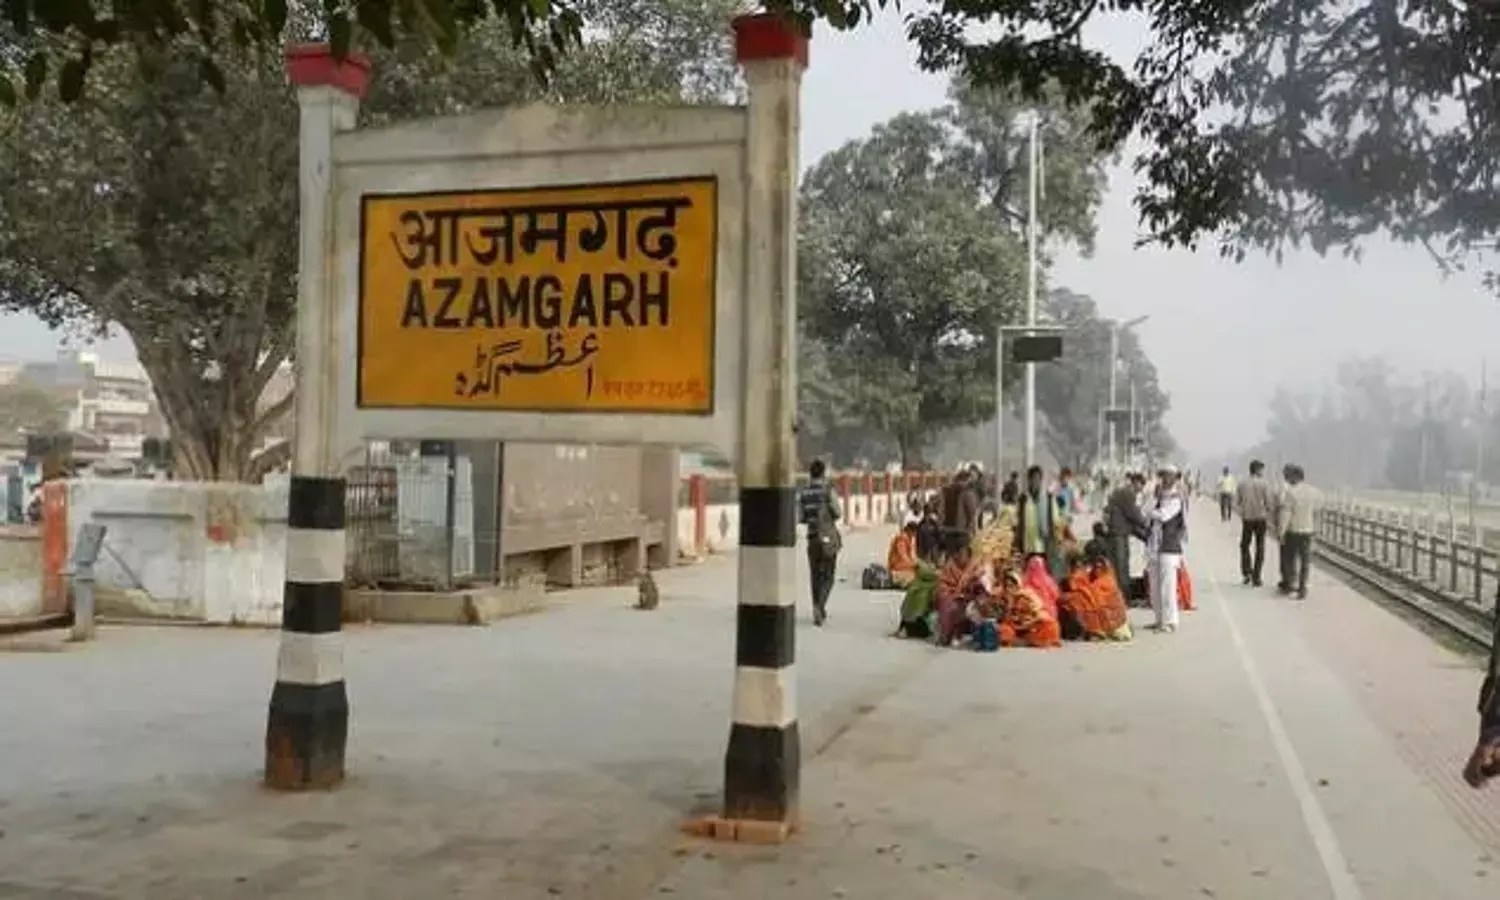 Azamgarh History Hindi: इतिहास और आजमगढ़ का है गहरा नाता, बनारसी साड़ियों के लिए है प्रसिद्ध